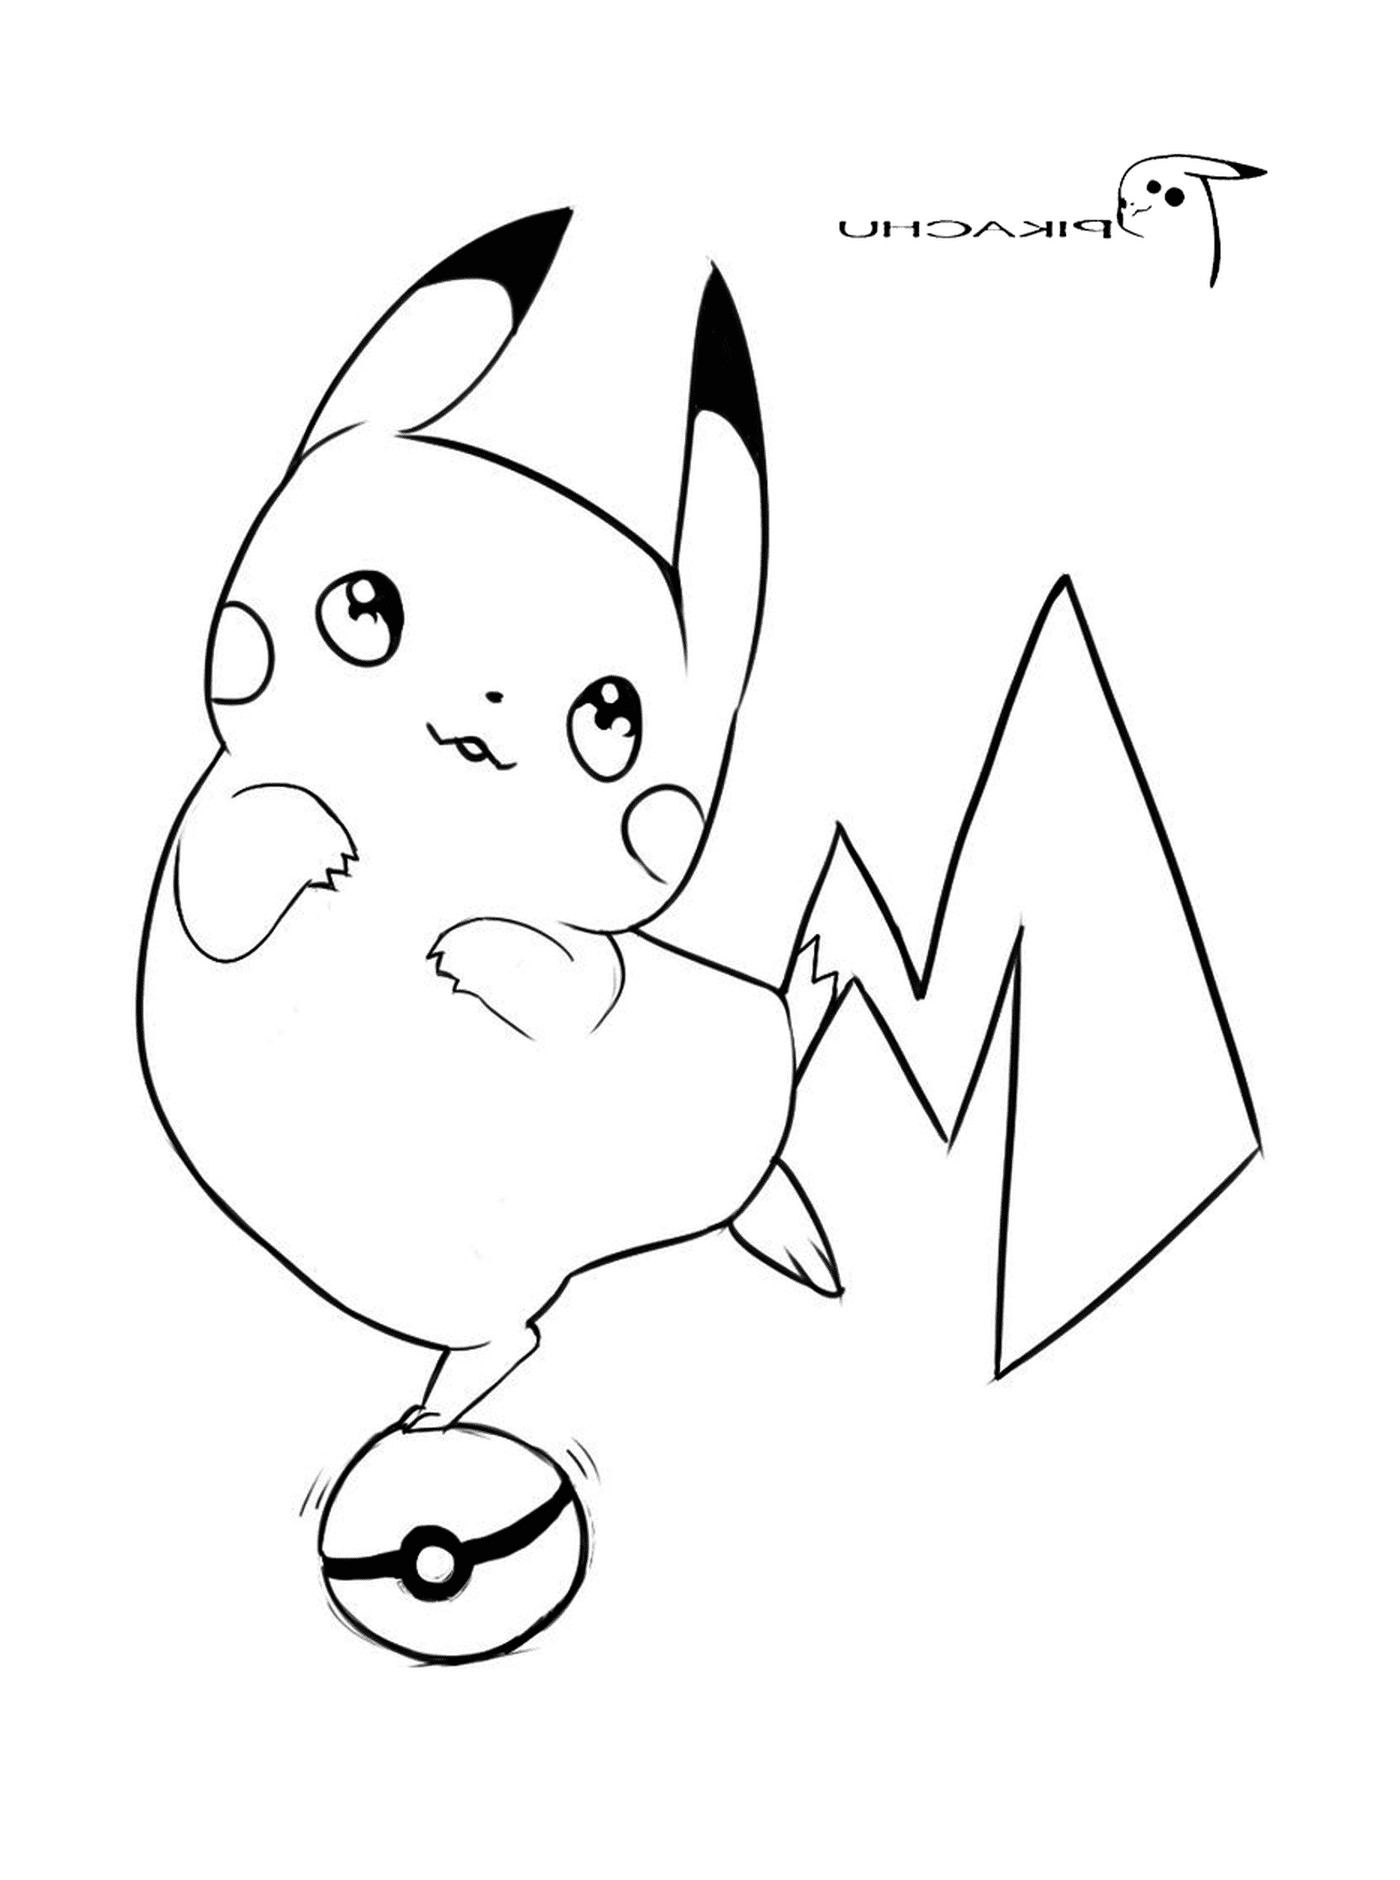   Pikachu avec une expression fière 